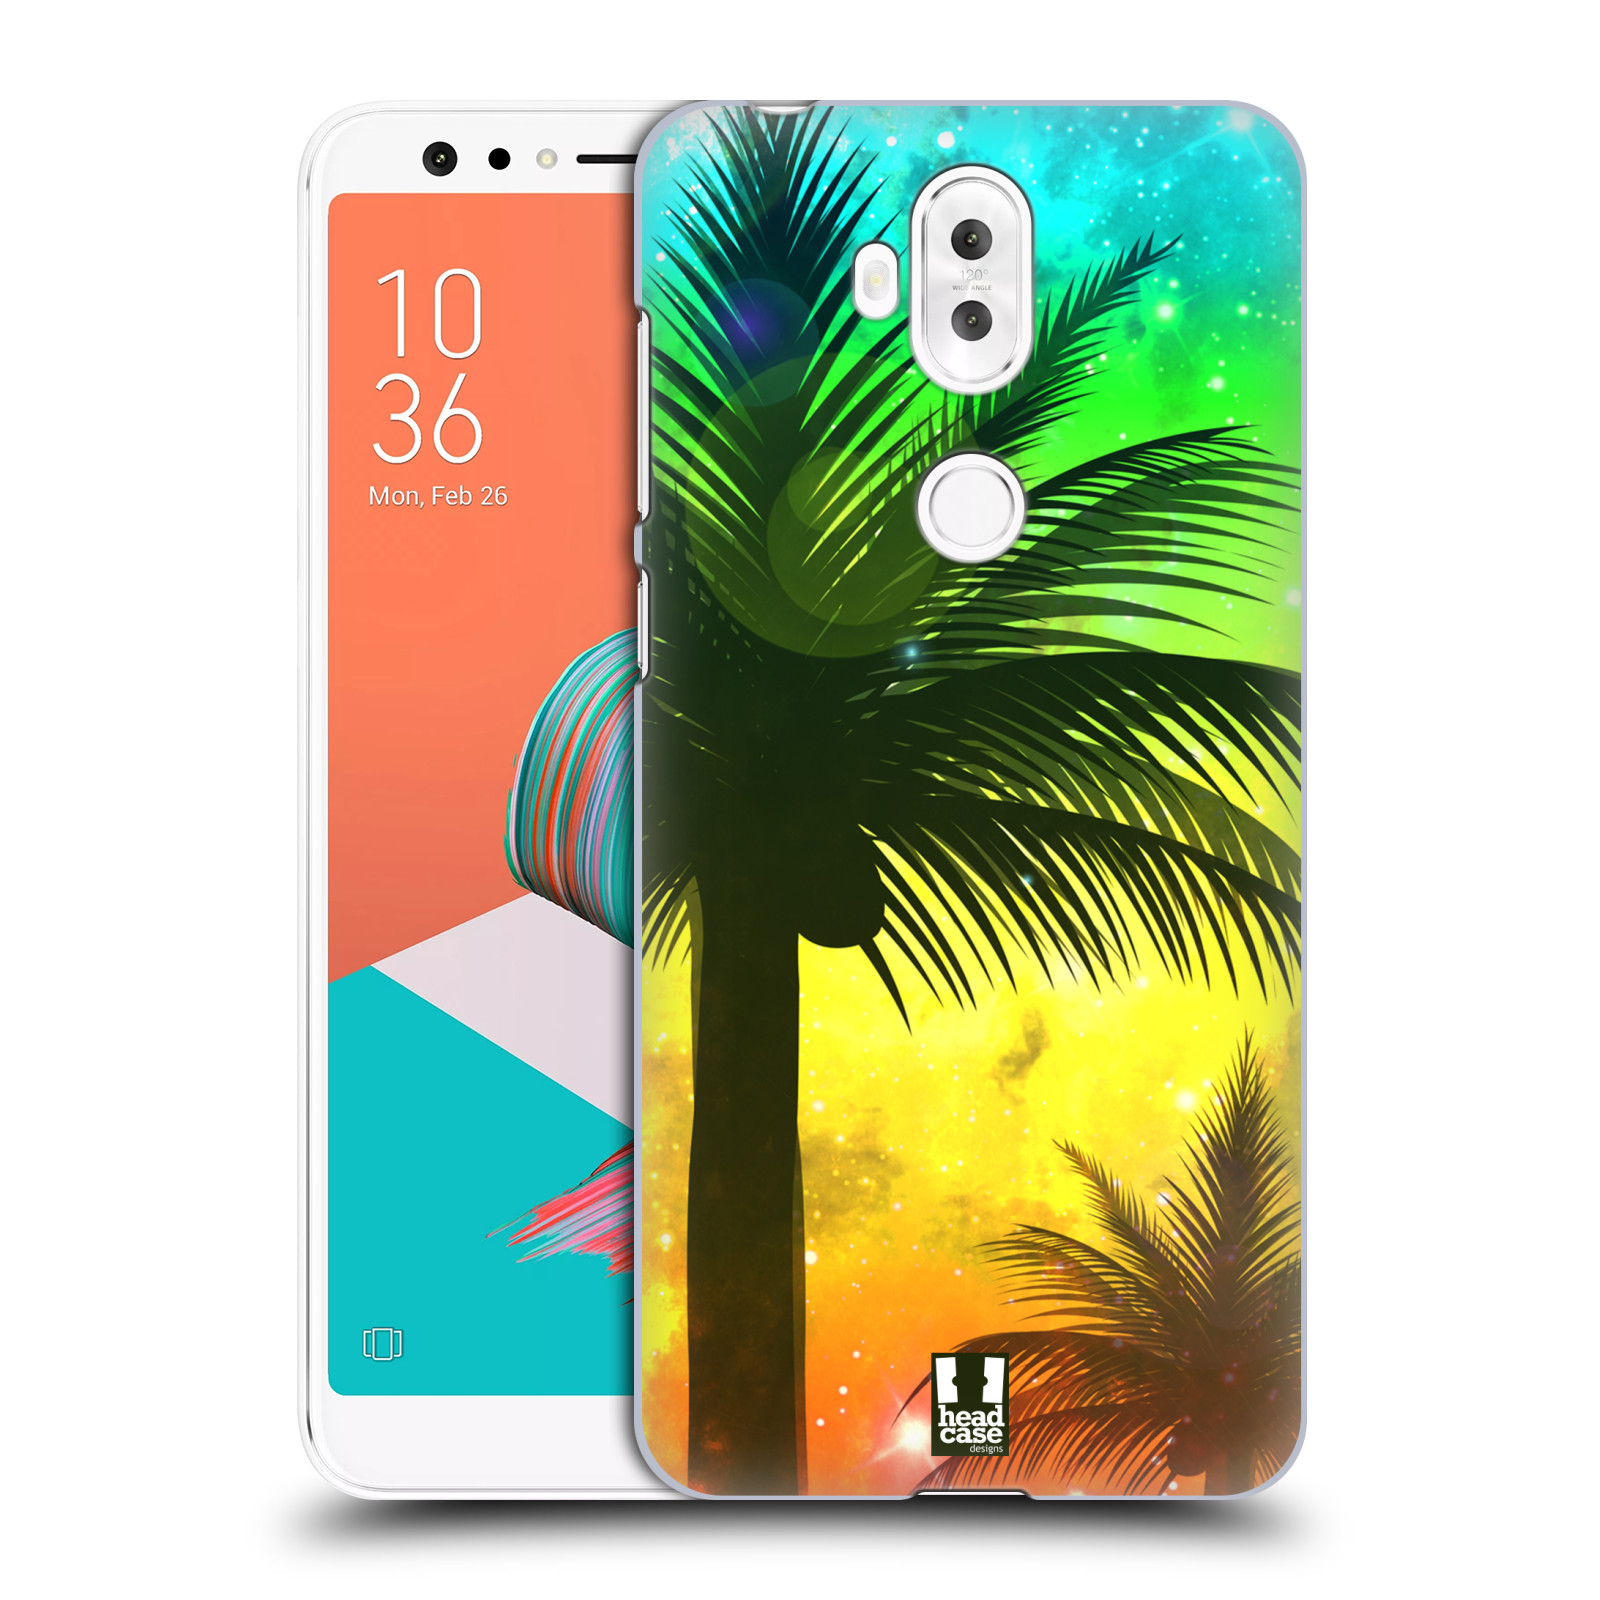 HEAD CASE plastový obal na mobil Asus Zenfone 5 LITE ZC600KL vzor Kreslený motiv silueta moře a palmy ZELENÁ A ORANŽOVÁ